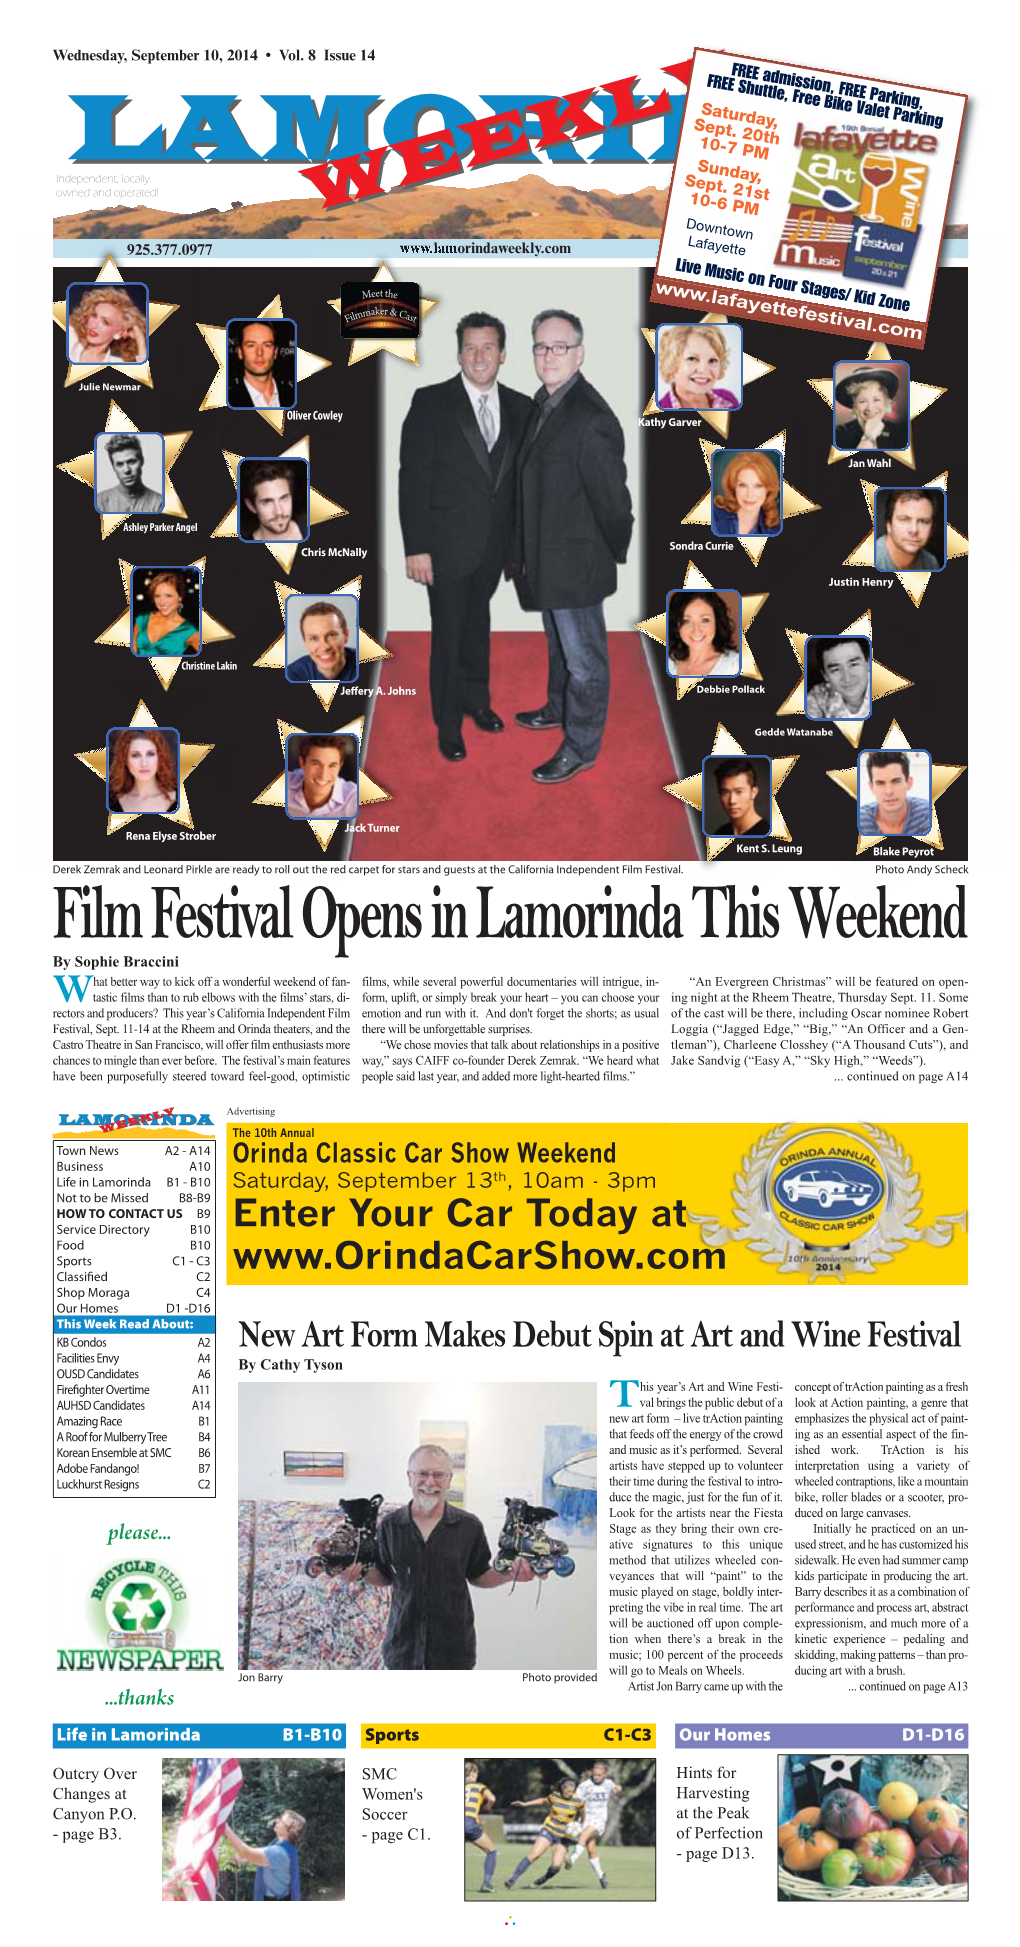 Film Festival Opens in Lamorinda This Weekend